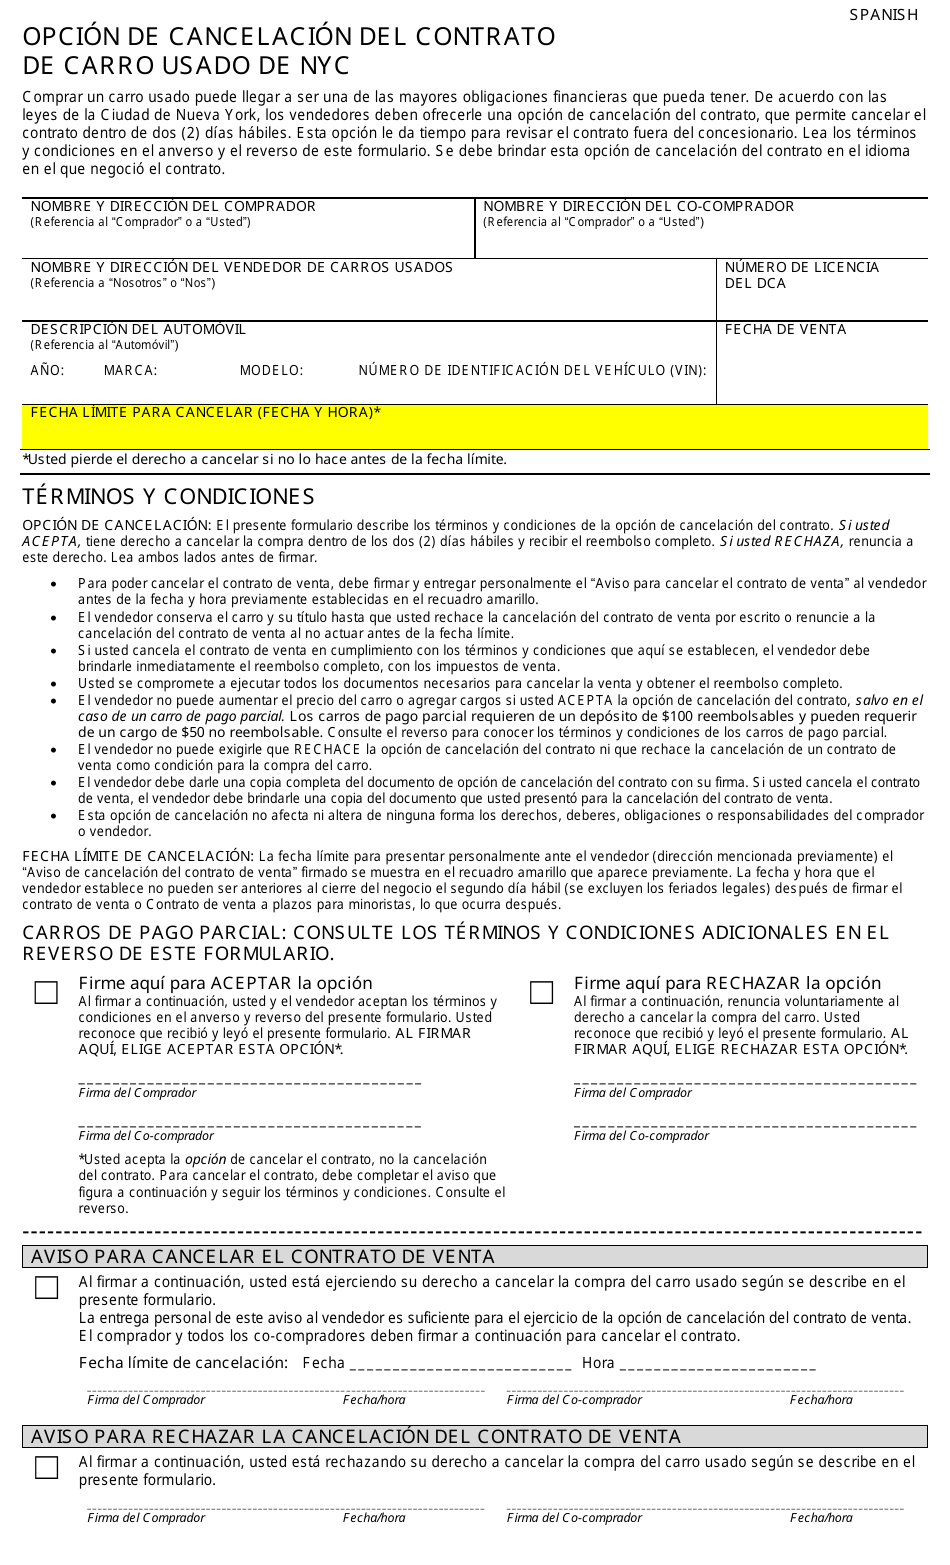 Opcion De Cancelacion Del Contrato De Carro Usado De Nyc - New York City (Spanish), Page 1